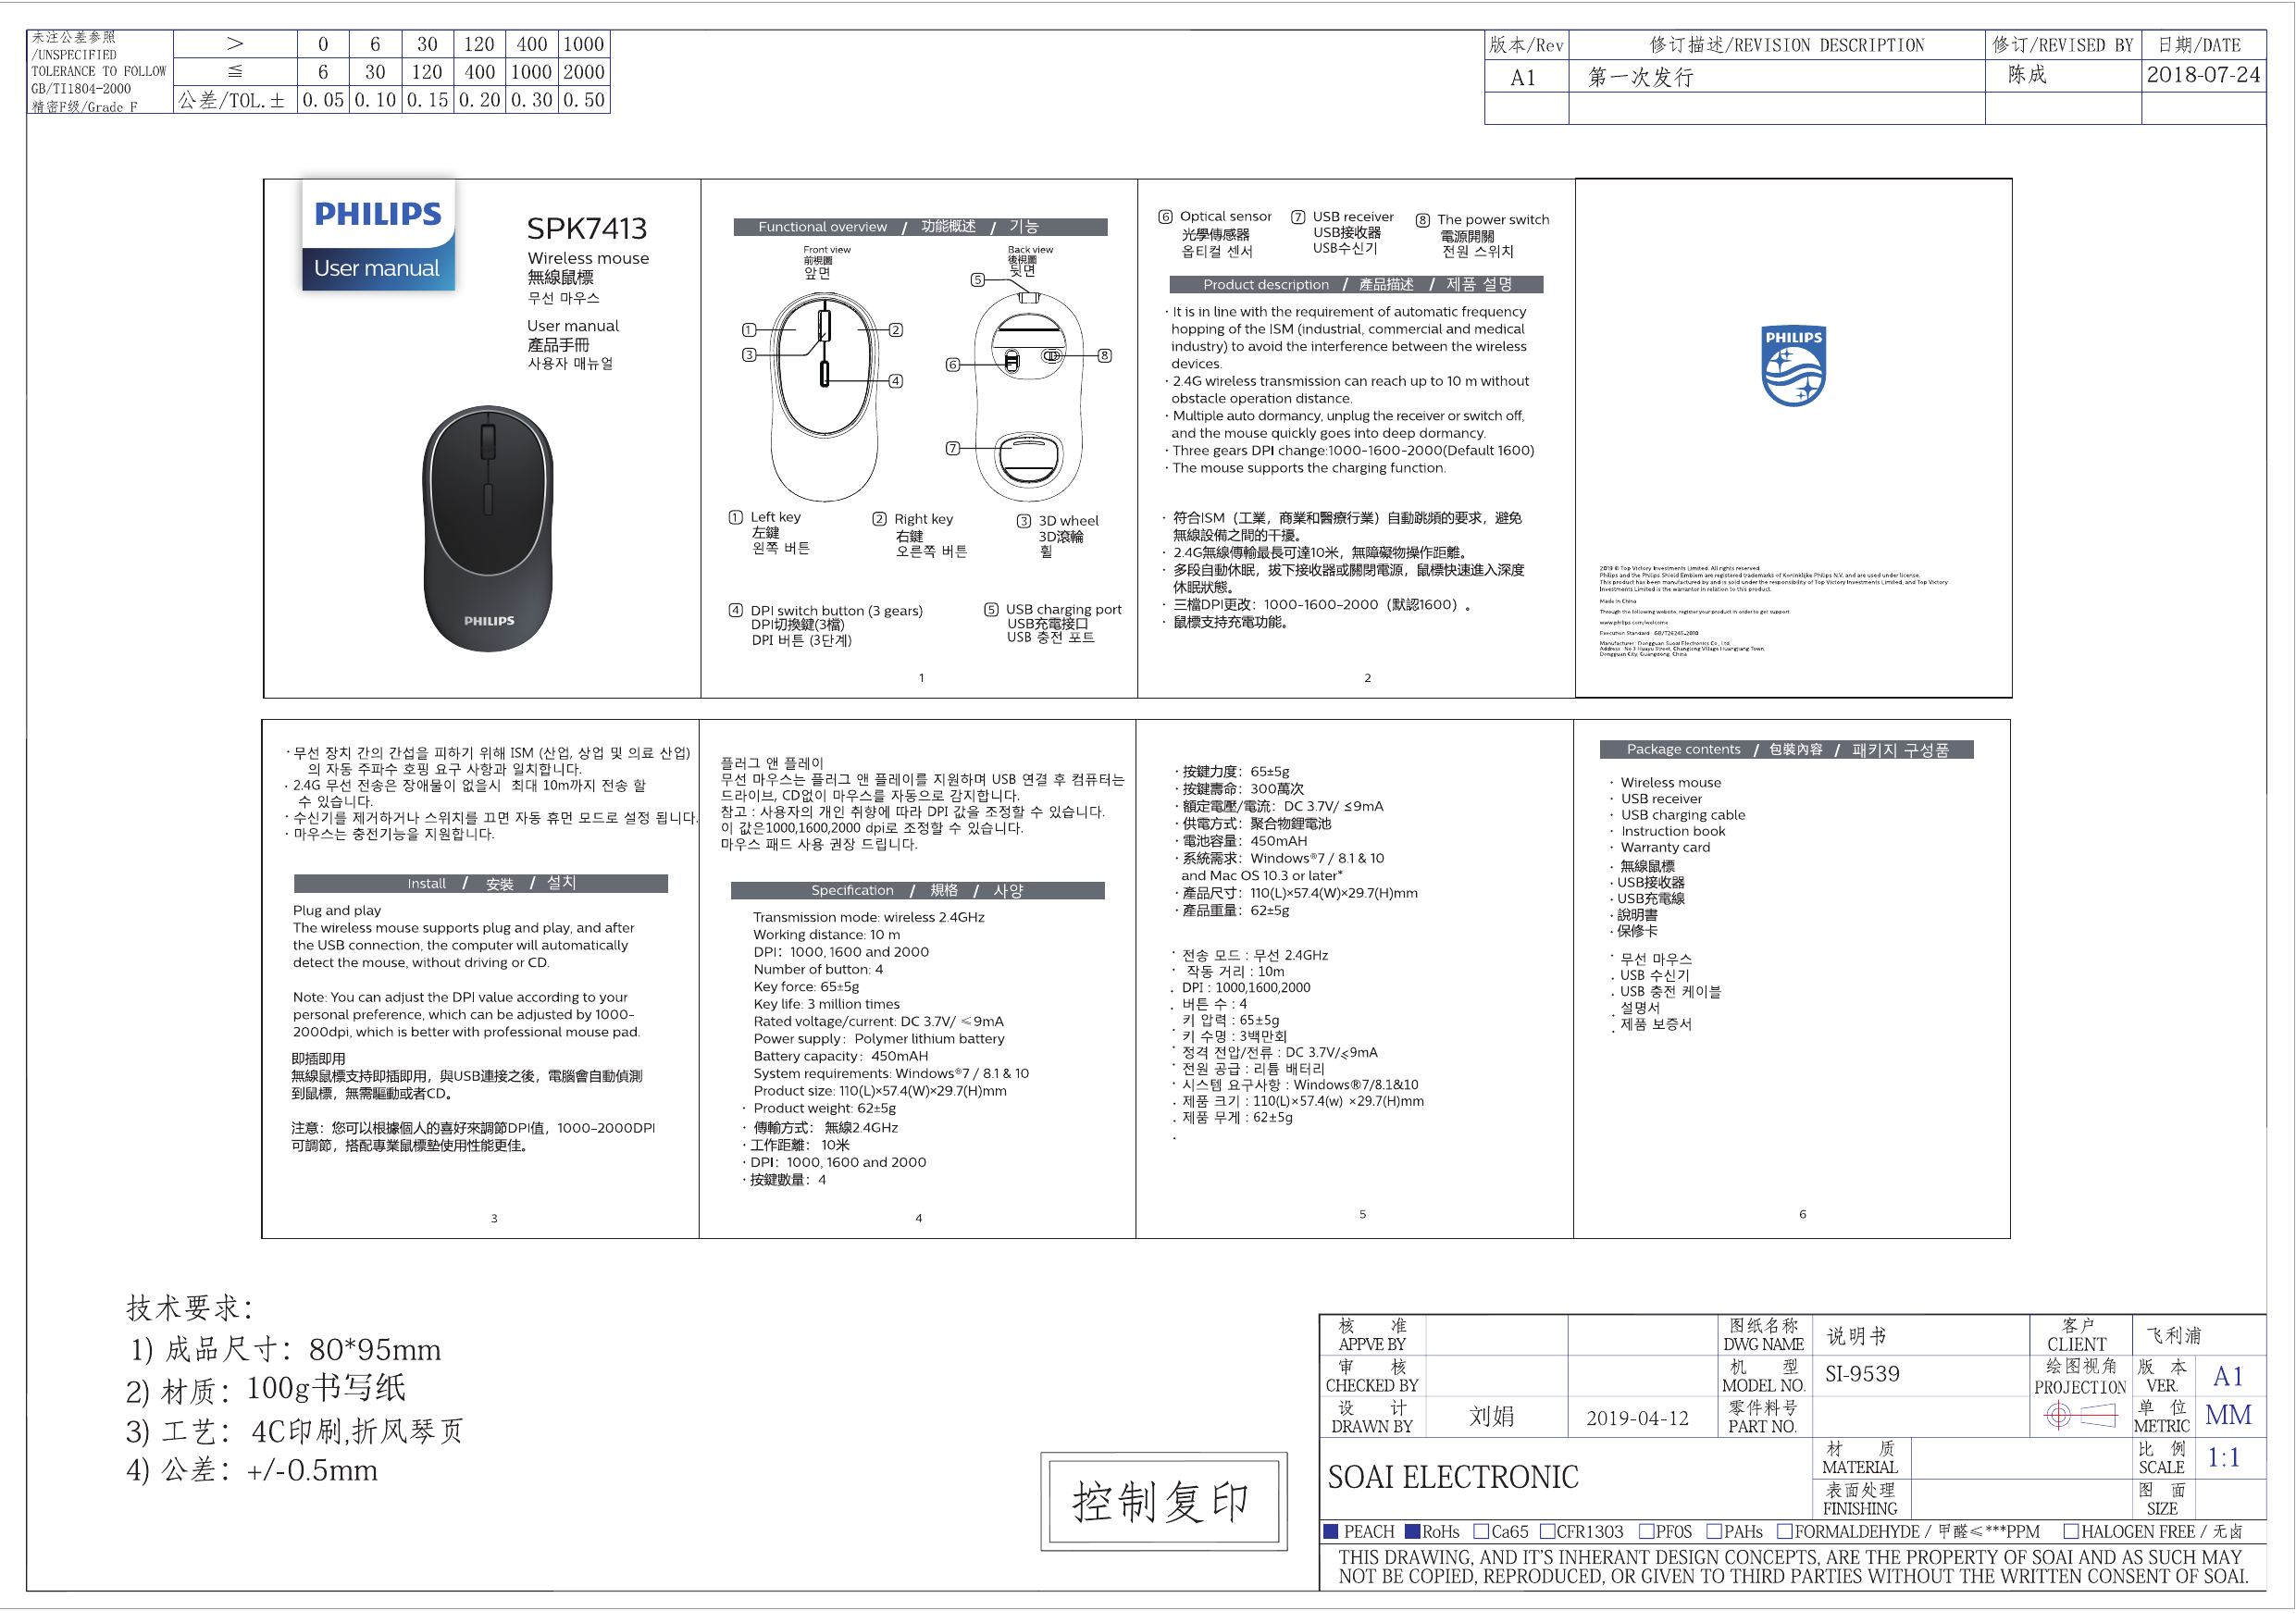 Philips Spk7413s 00 Spk7413 00 Quick Start Guide Manualzz